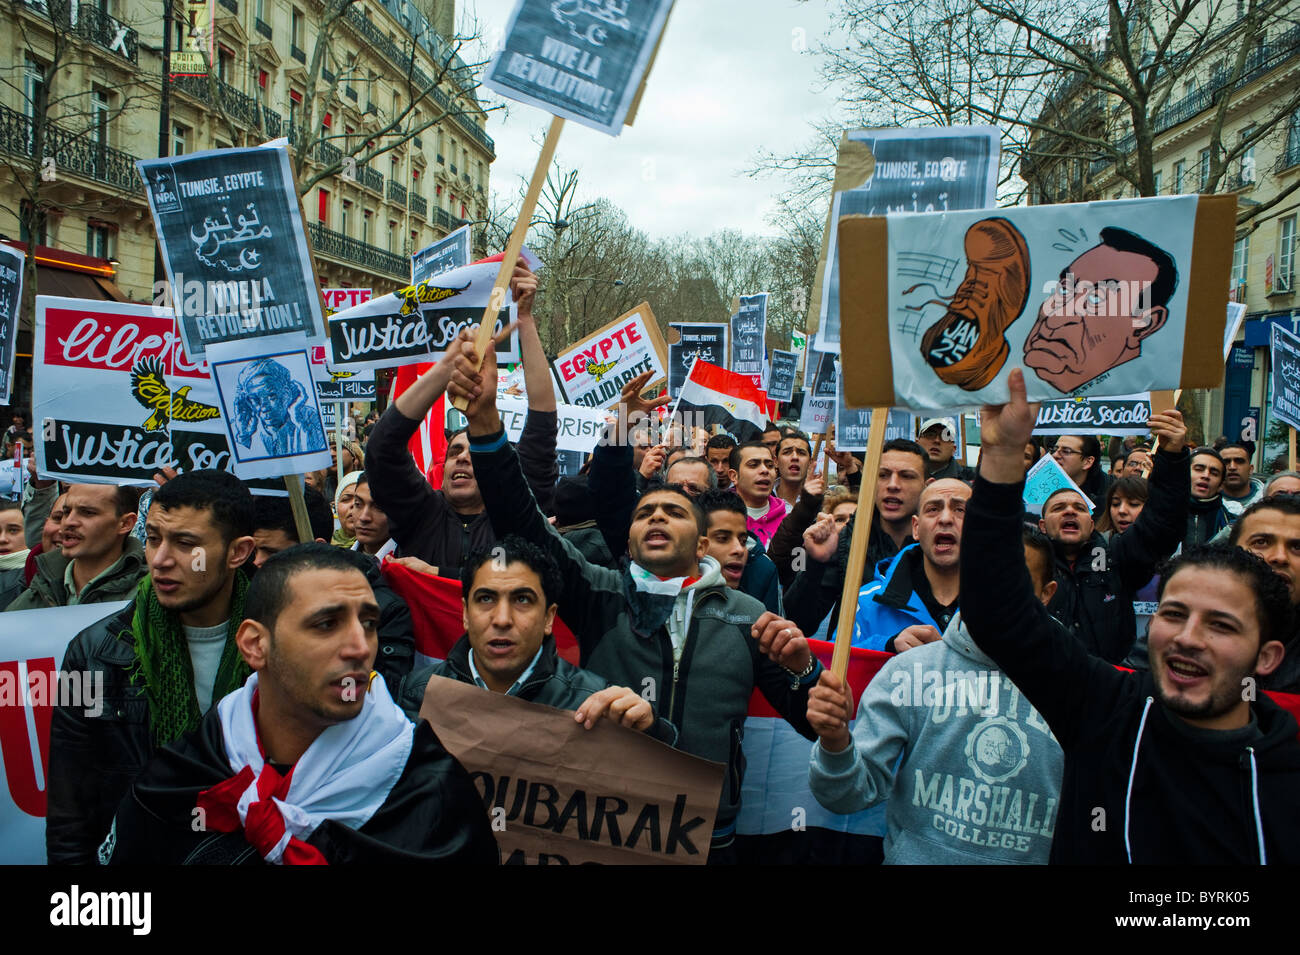 Paris, France, manifestants égyptiens, mouvement de protestation du Printemps arabe contre 'Hosni Moubarak', rue, foule de l'homme, présence de signes de protestation, foules de manifestation, manifestation de la république de paris Banque D'Images